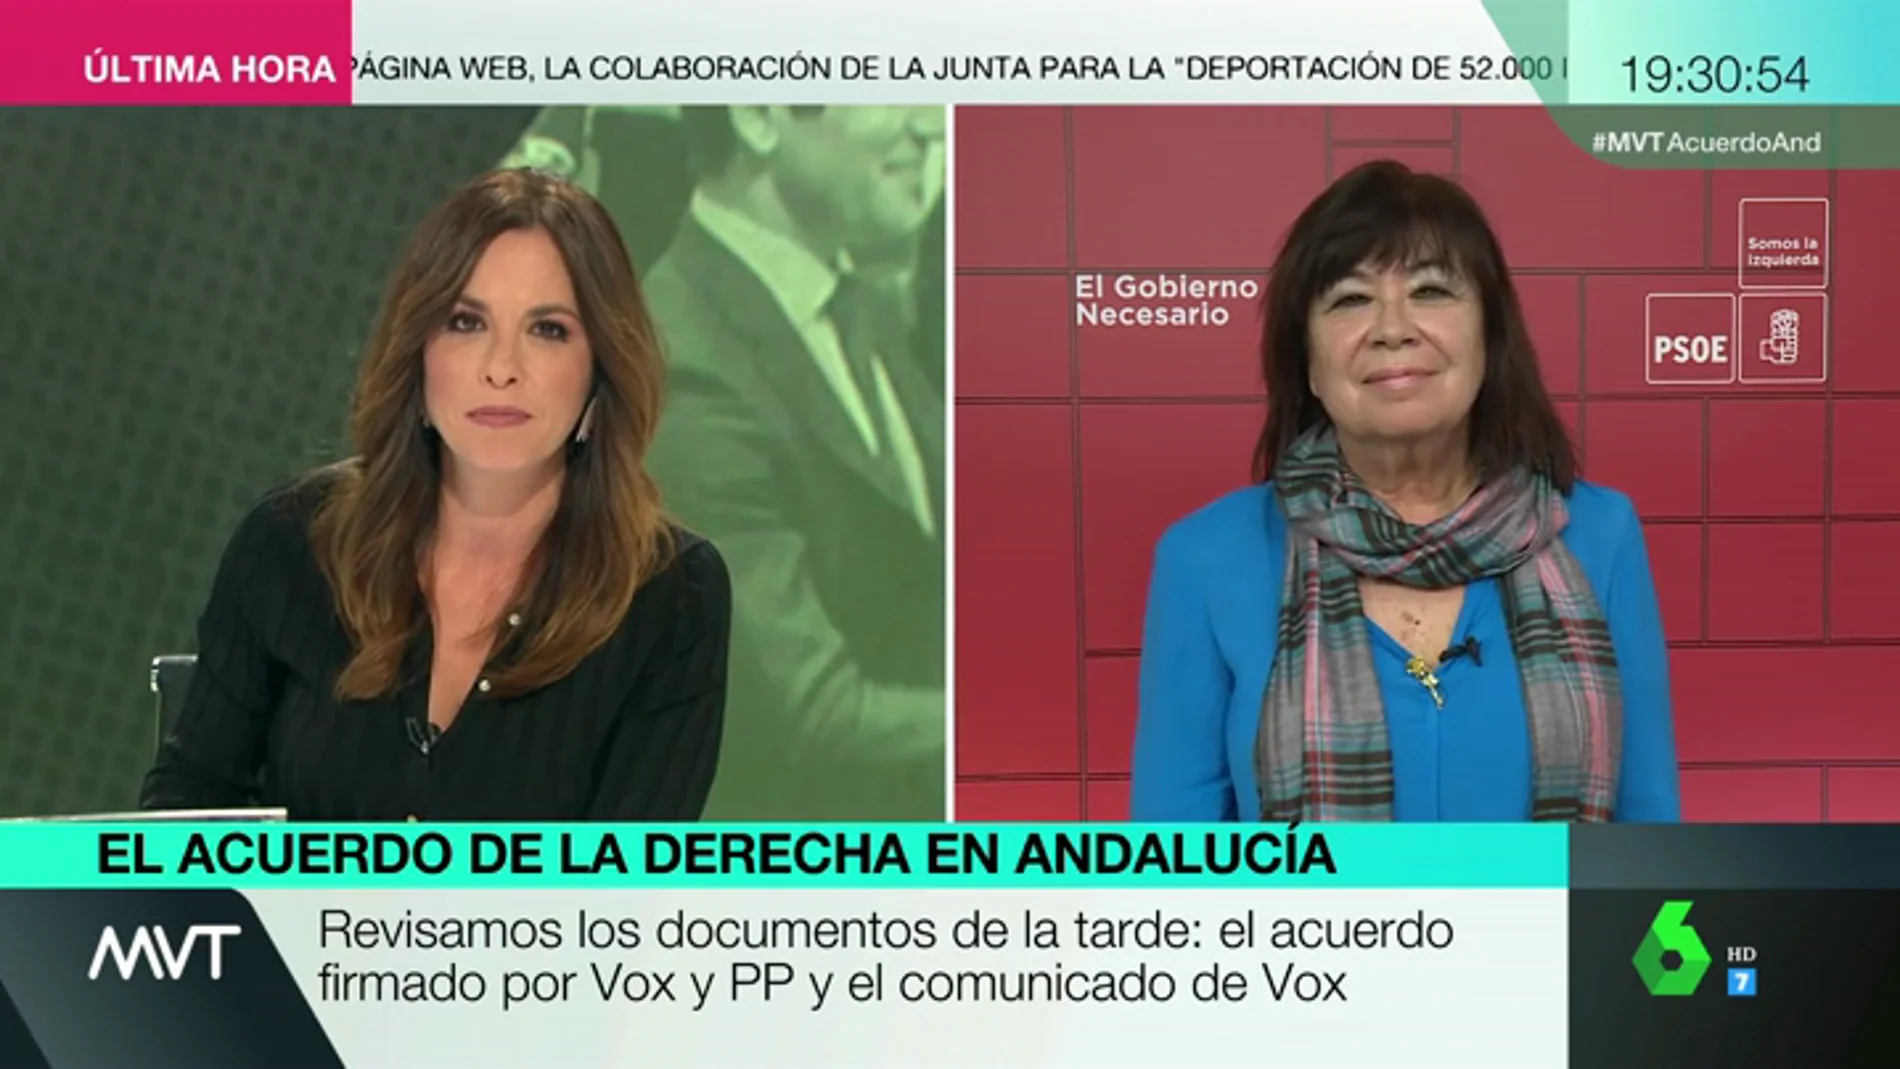 Cristina Narbona: "El acuerdo PP-Cs es como un iceberg; solo se ve la parte superior, lo preocupante es lo que no vemos"